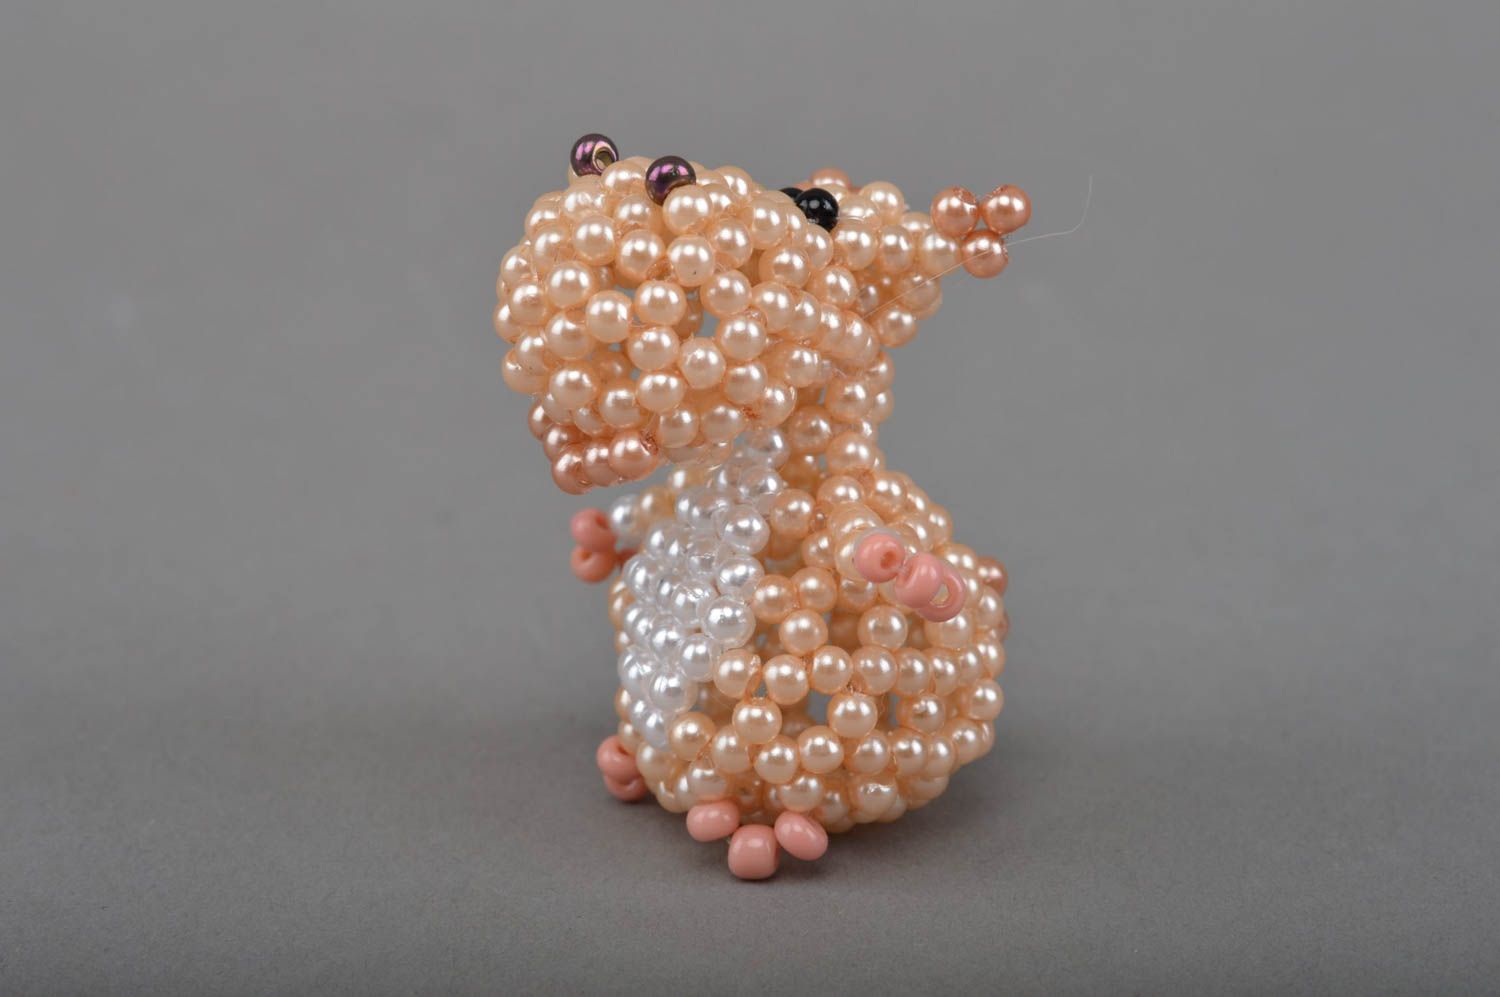 Hippo Mini Figurine aus Glasperlen für Interieur Dekor Designer Handarbeit schön foto 3